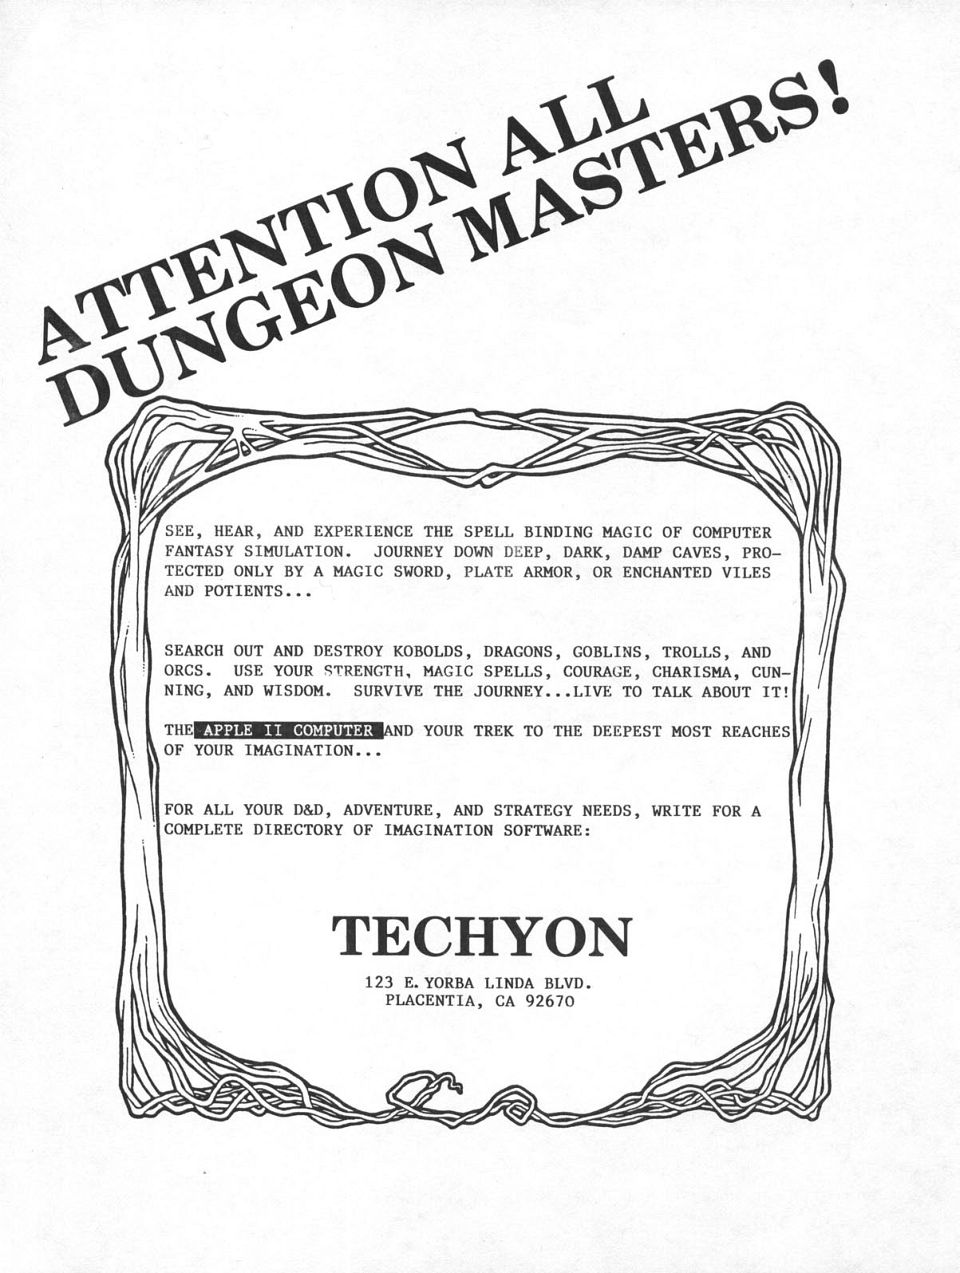 Advertisement: Techyon